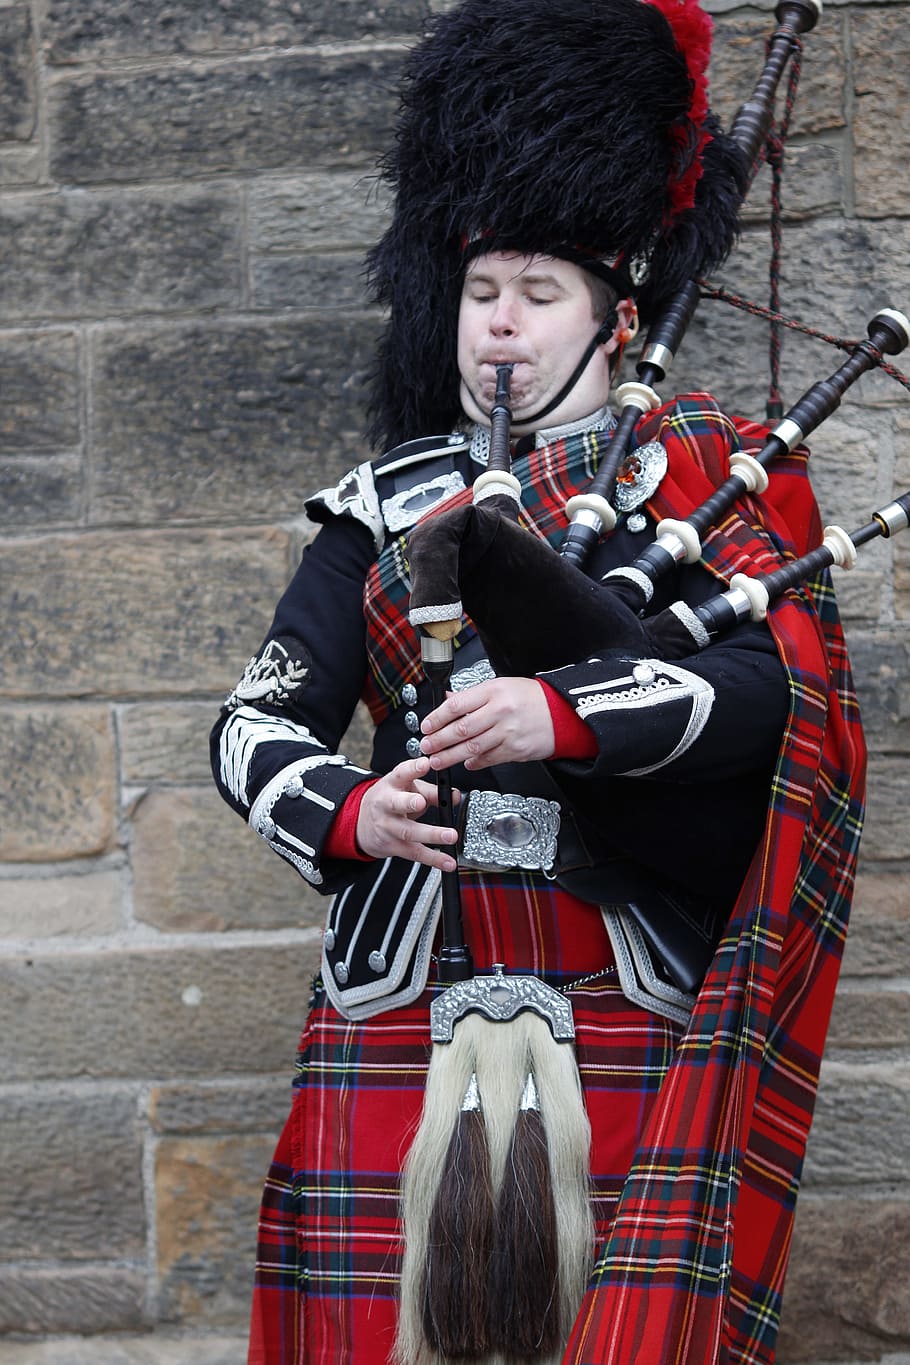 Escocia, Jock, Kilt, gaitas, instrumentos musicales, Edimburgo, música, músico, instrumento de viento, músicos callejeros